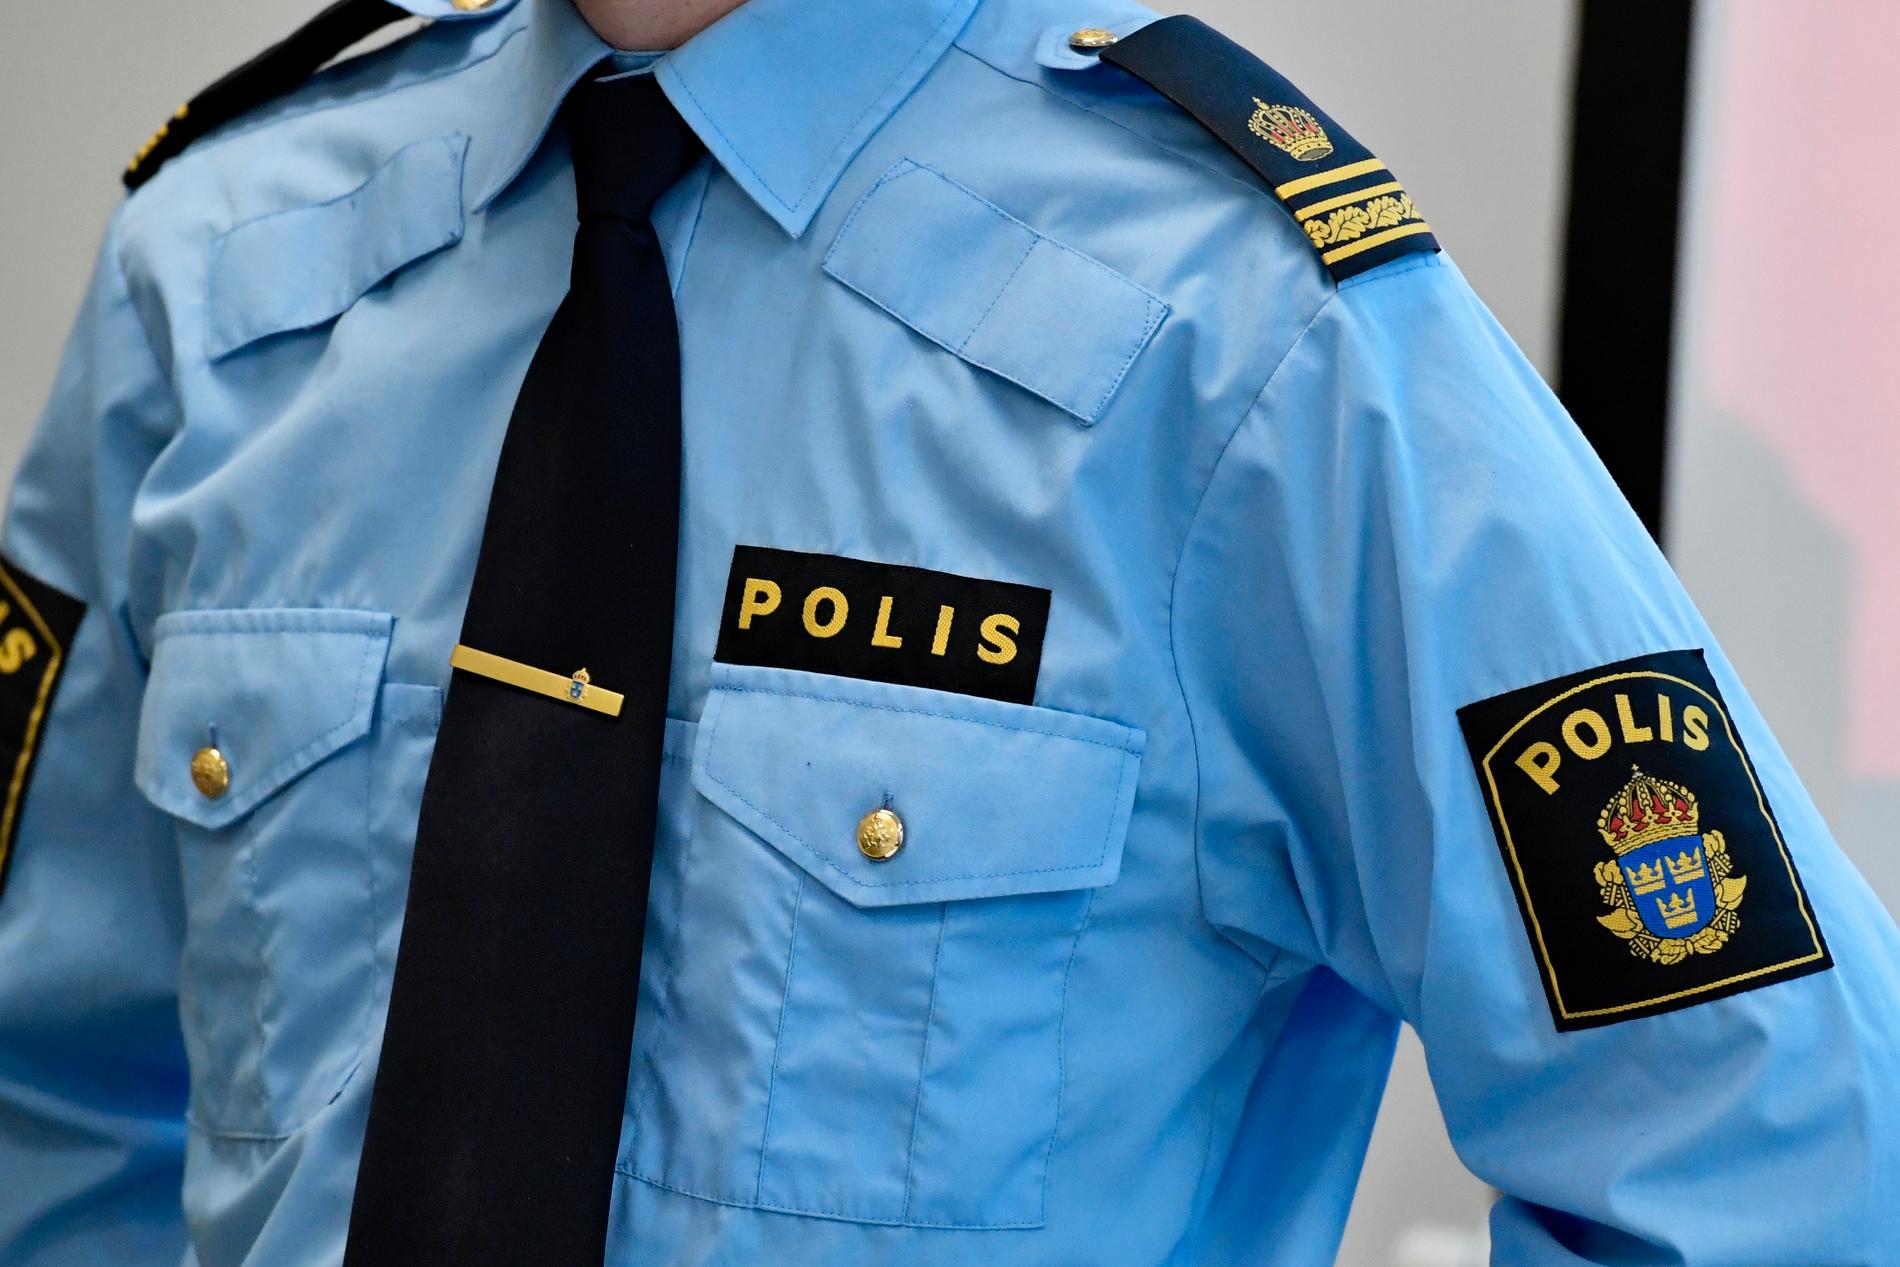 En 22-årig kvinna i Landskrona åtals misstänkt för mord på sin sambo. Arkivbild.